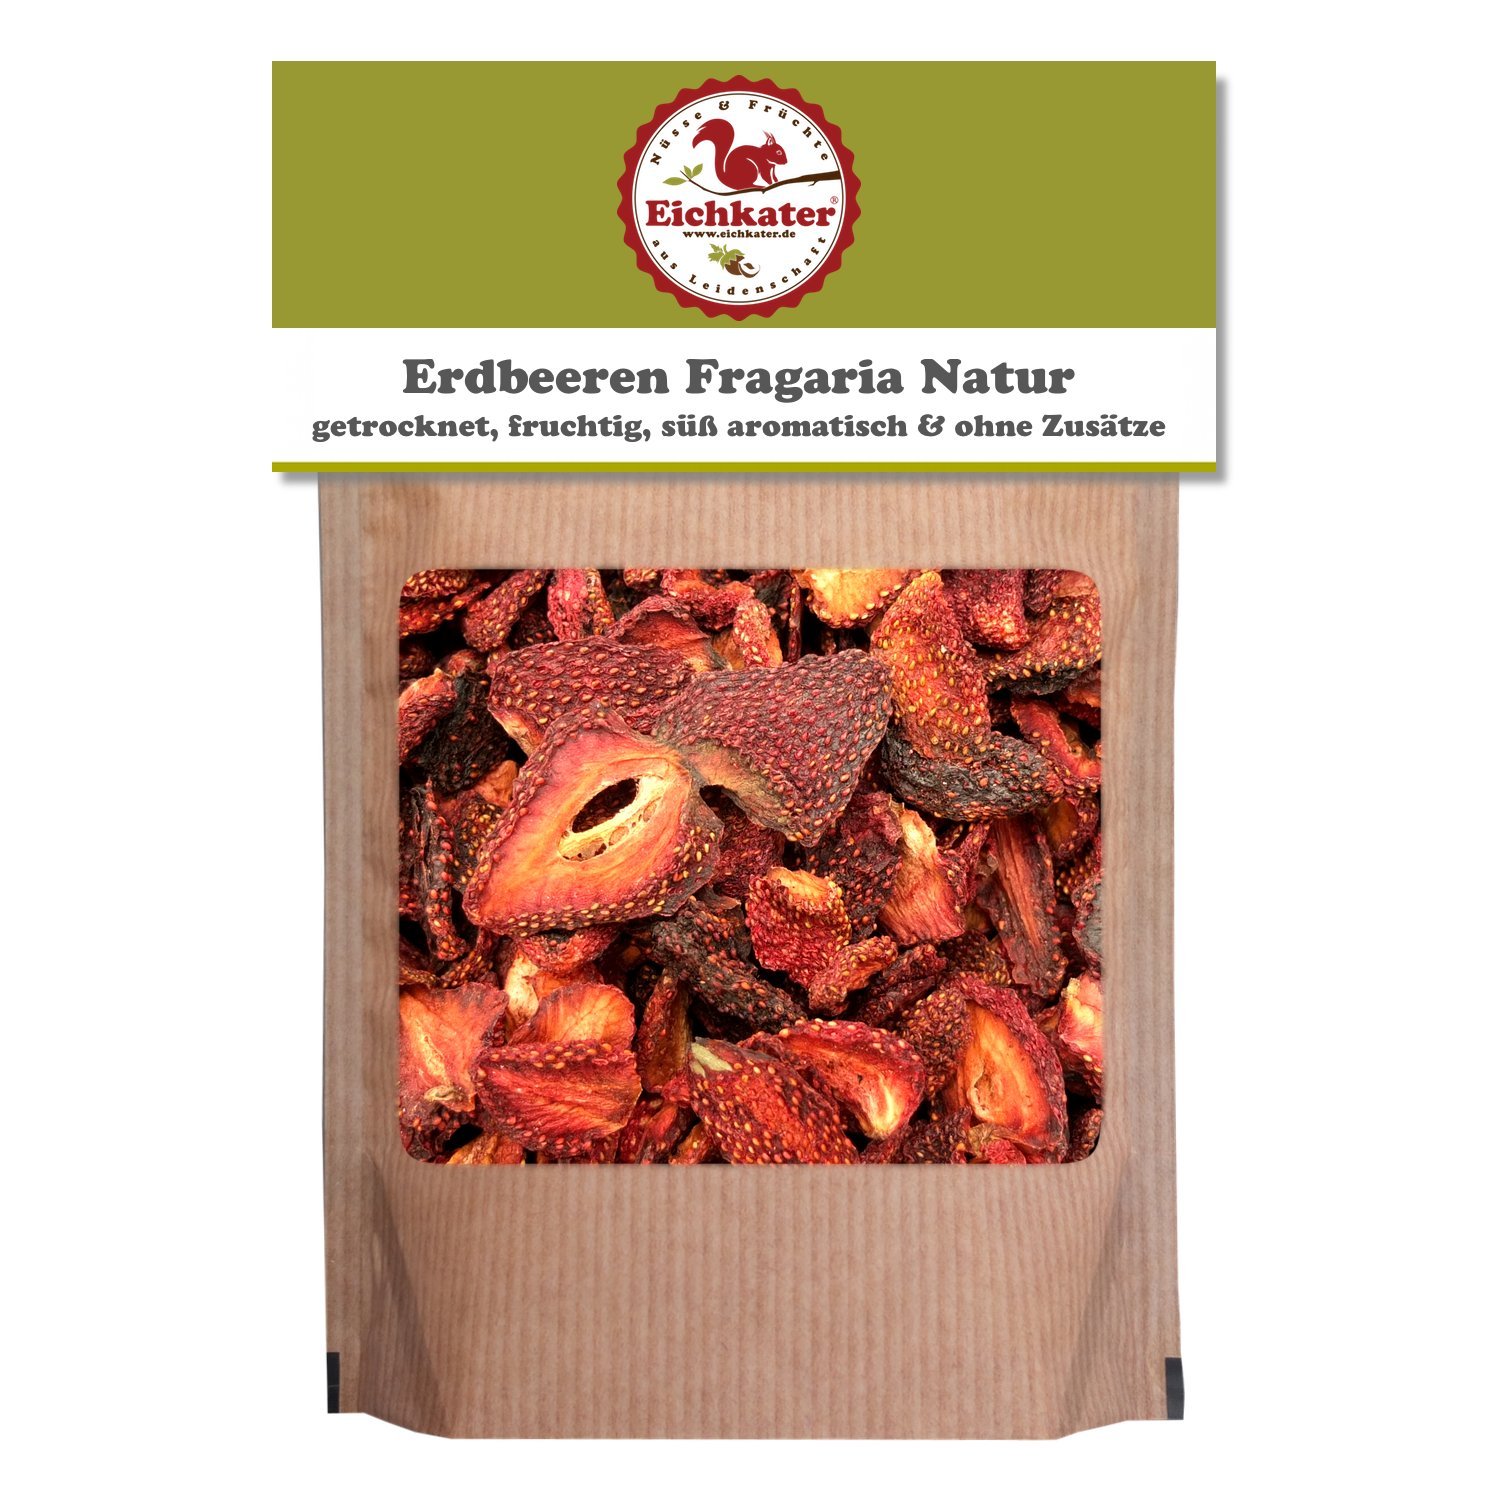 Eichkater getrocknete Erdbeeren Fragaria Natur ohne Zusätze 1er-Pack (1x750 g)